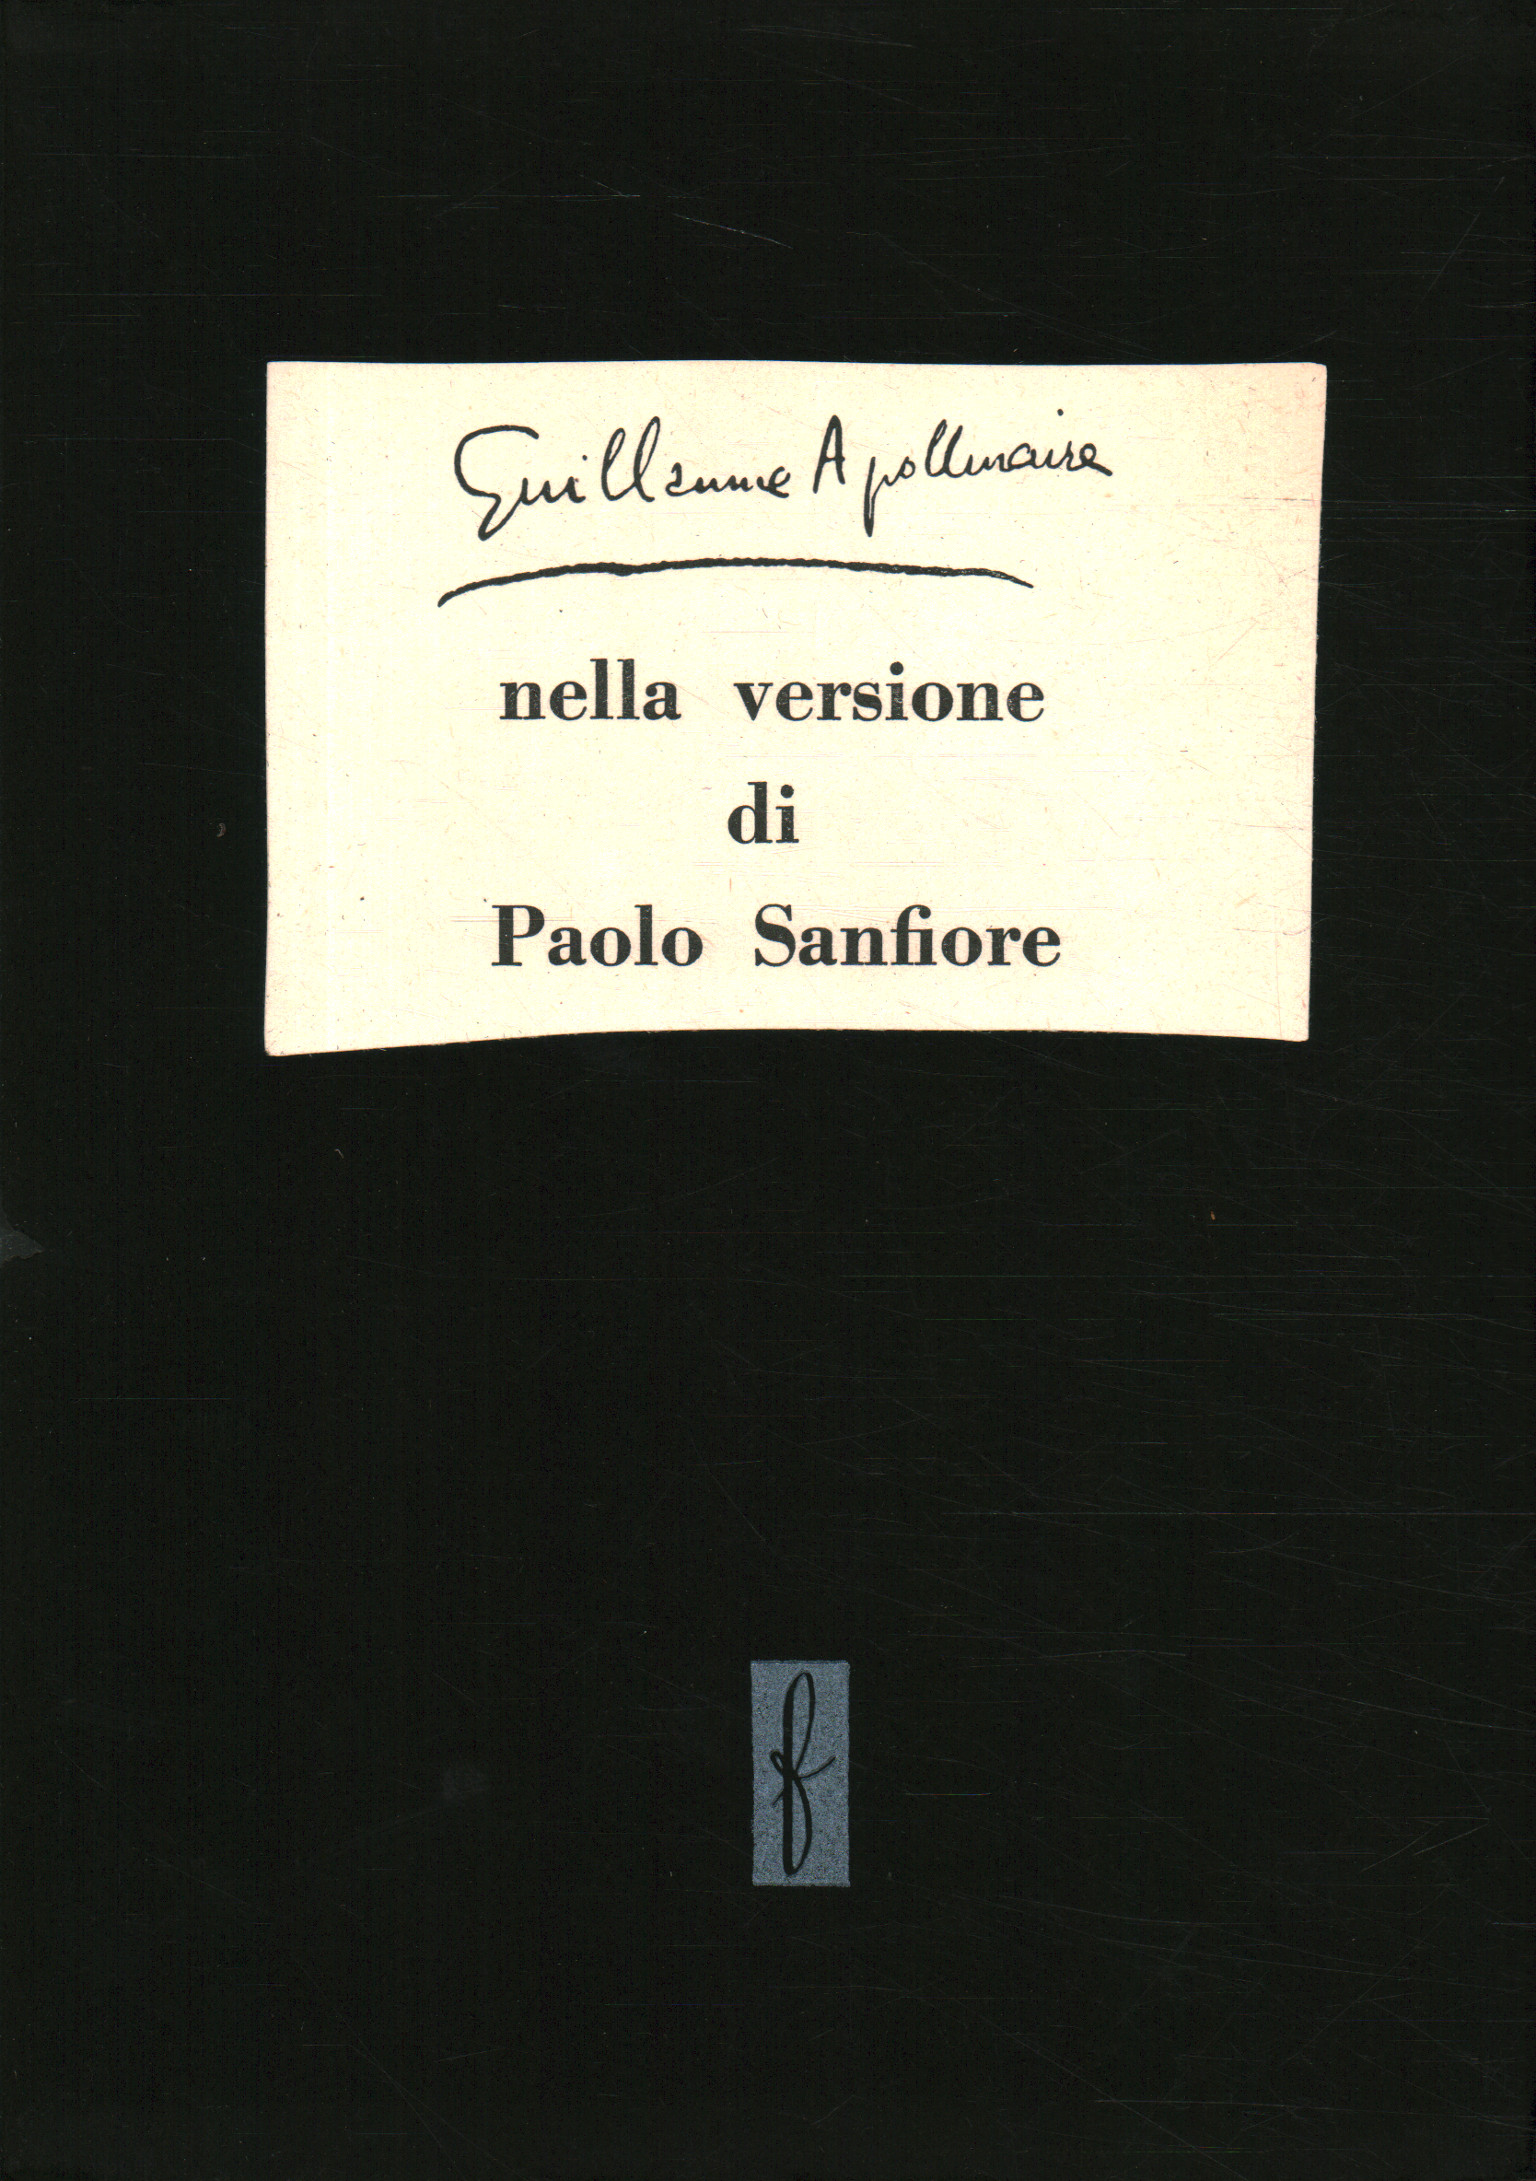 Libros - Poesía - Straniera, Guillaume Apollinaire en la versión de